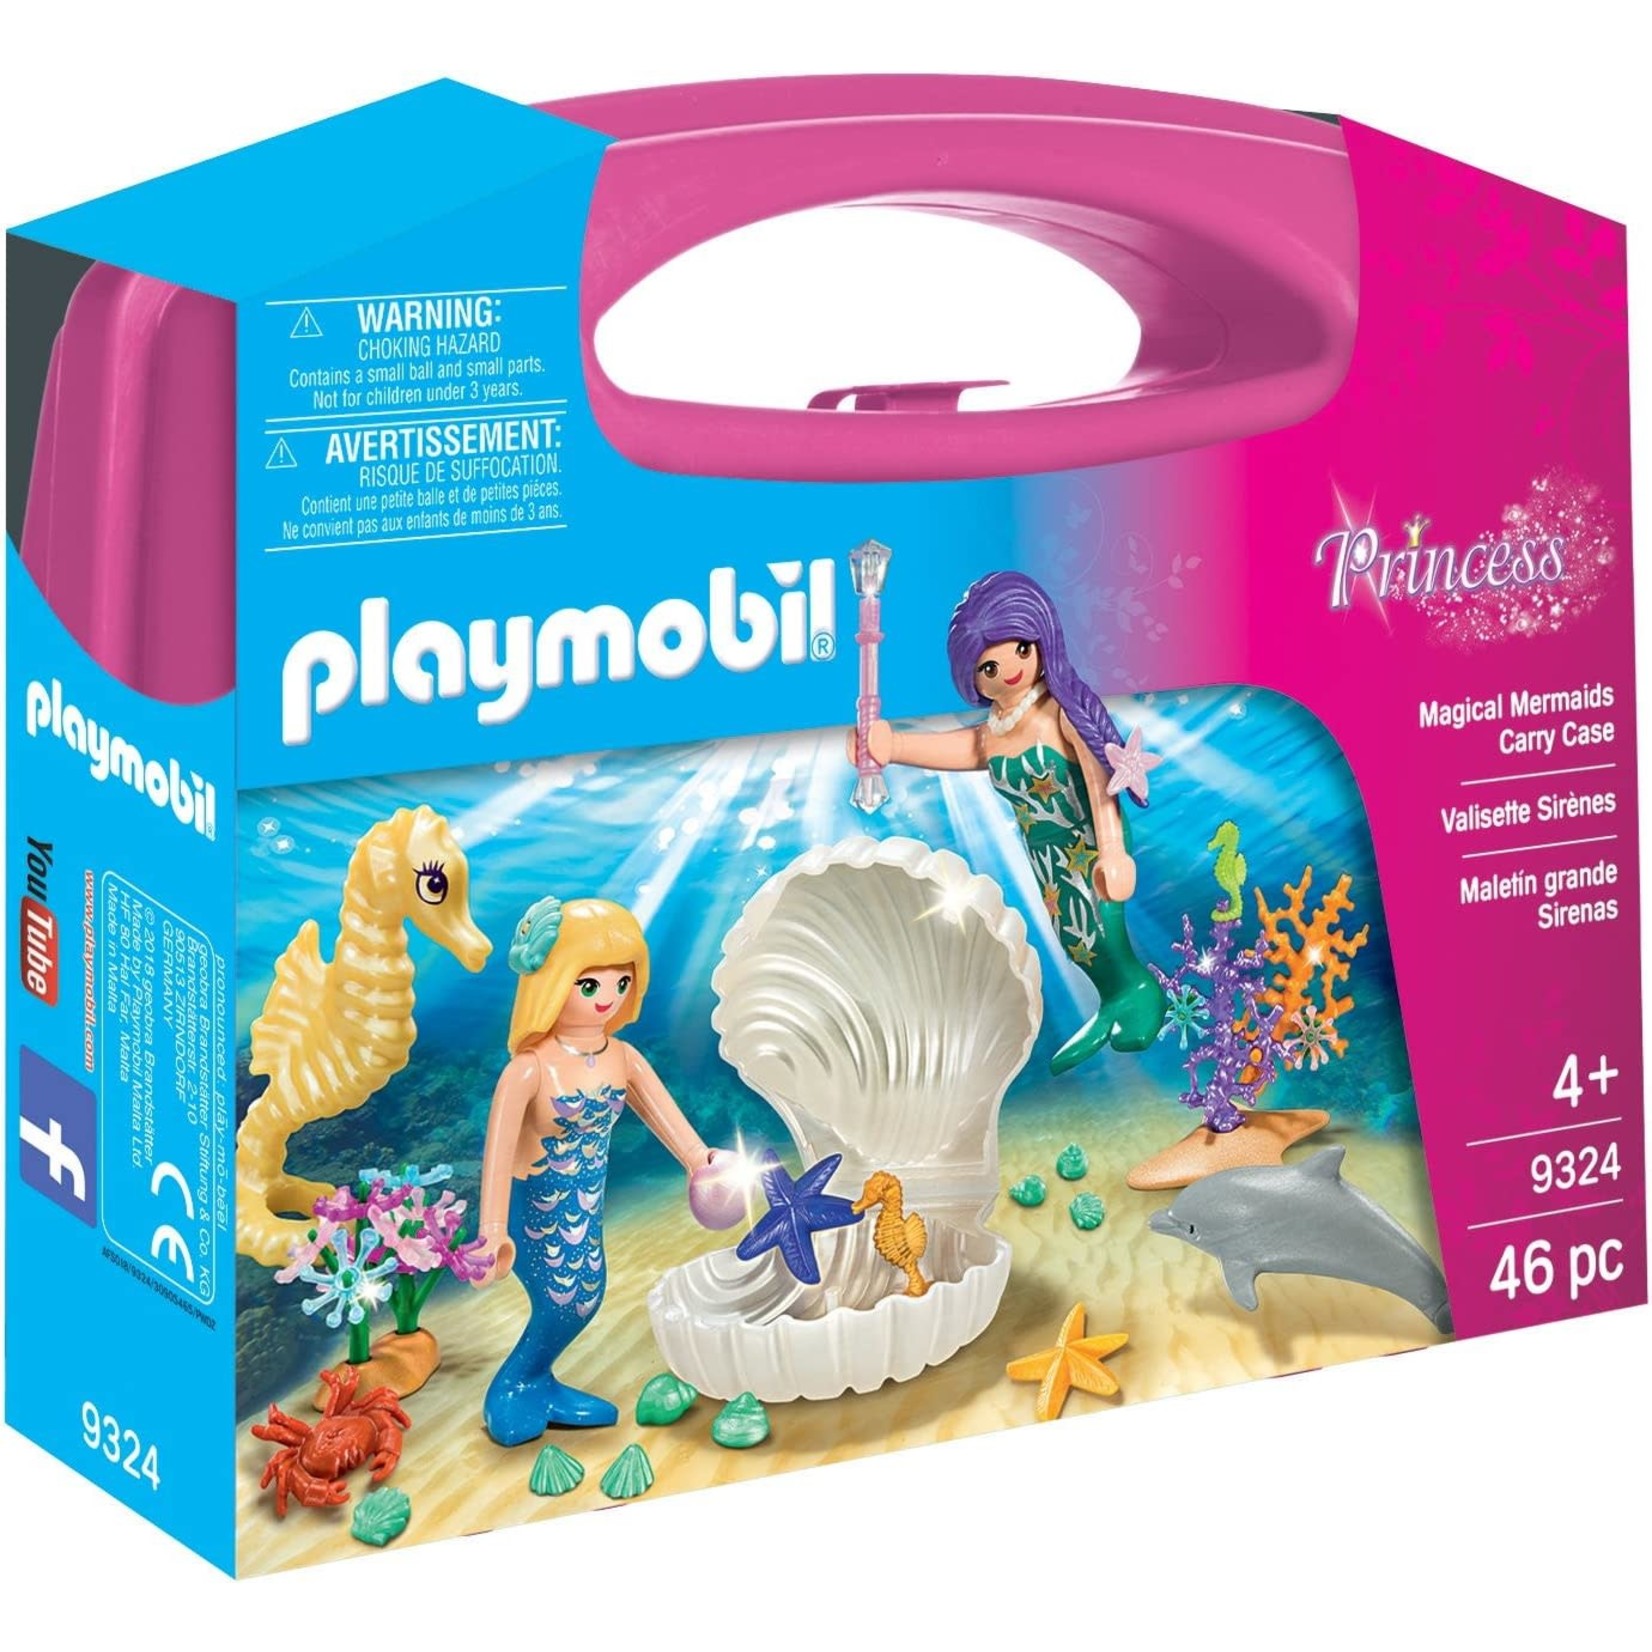 Playmobil Magical Mermaids Carry Case - Playmobil 9324